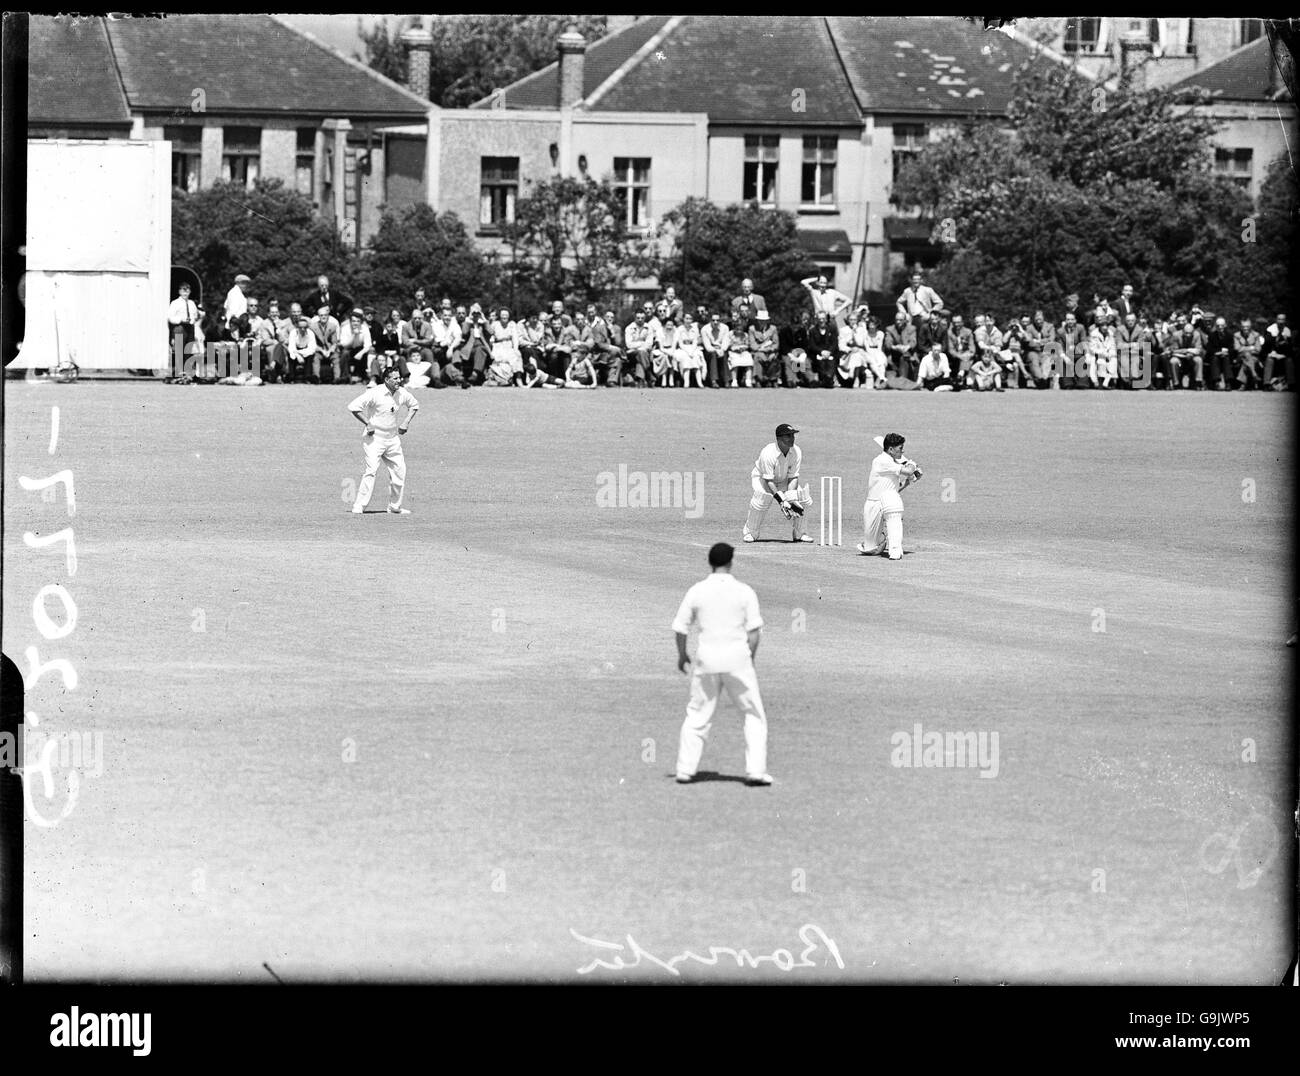 Cricket - Kent / Surrey. Ken Barrington di Surrey batting Foto Stock